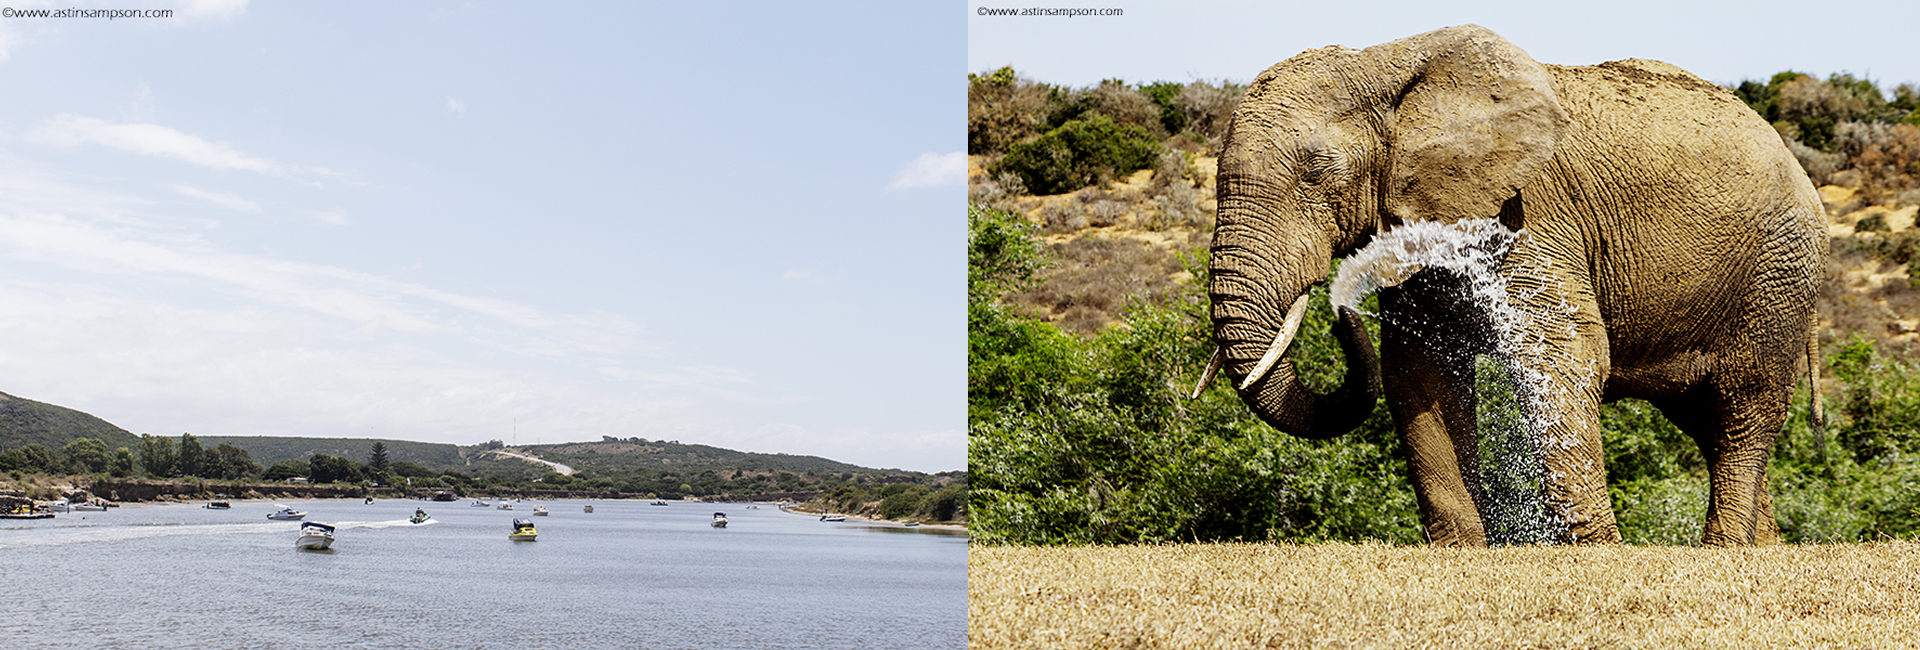 Sundays River & Addo Elephant National Park